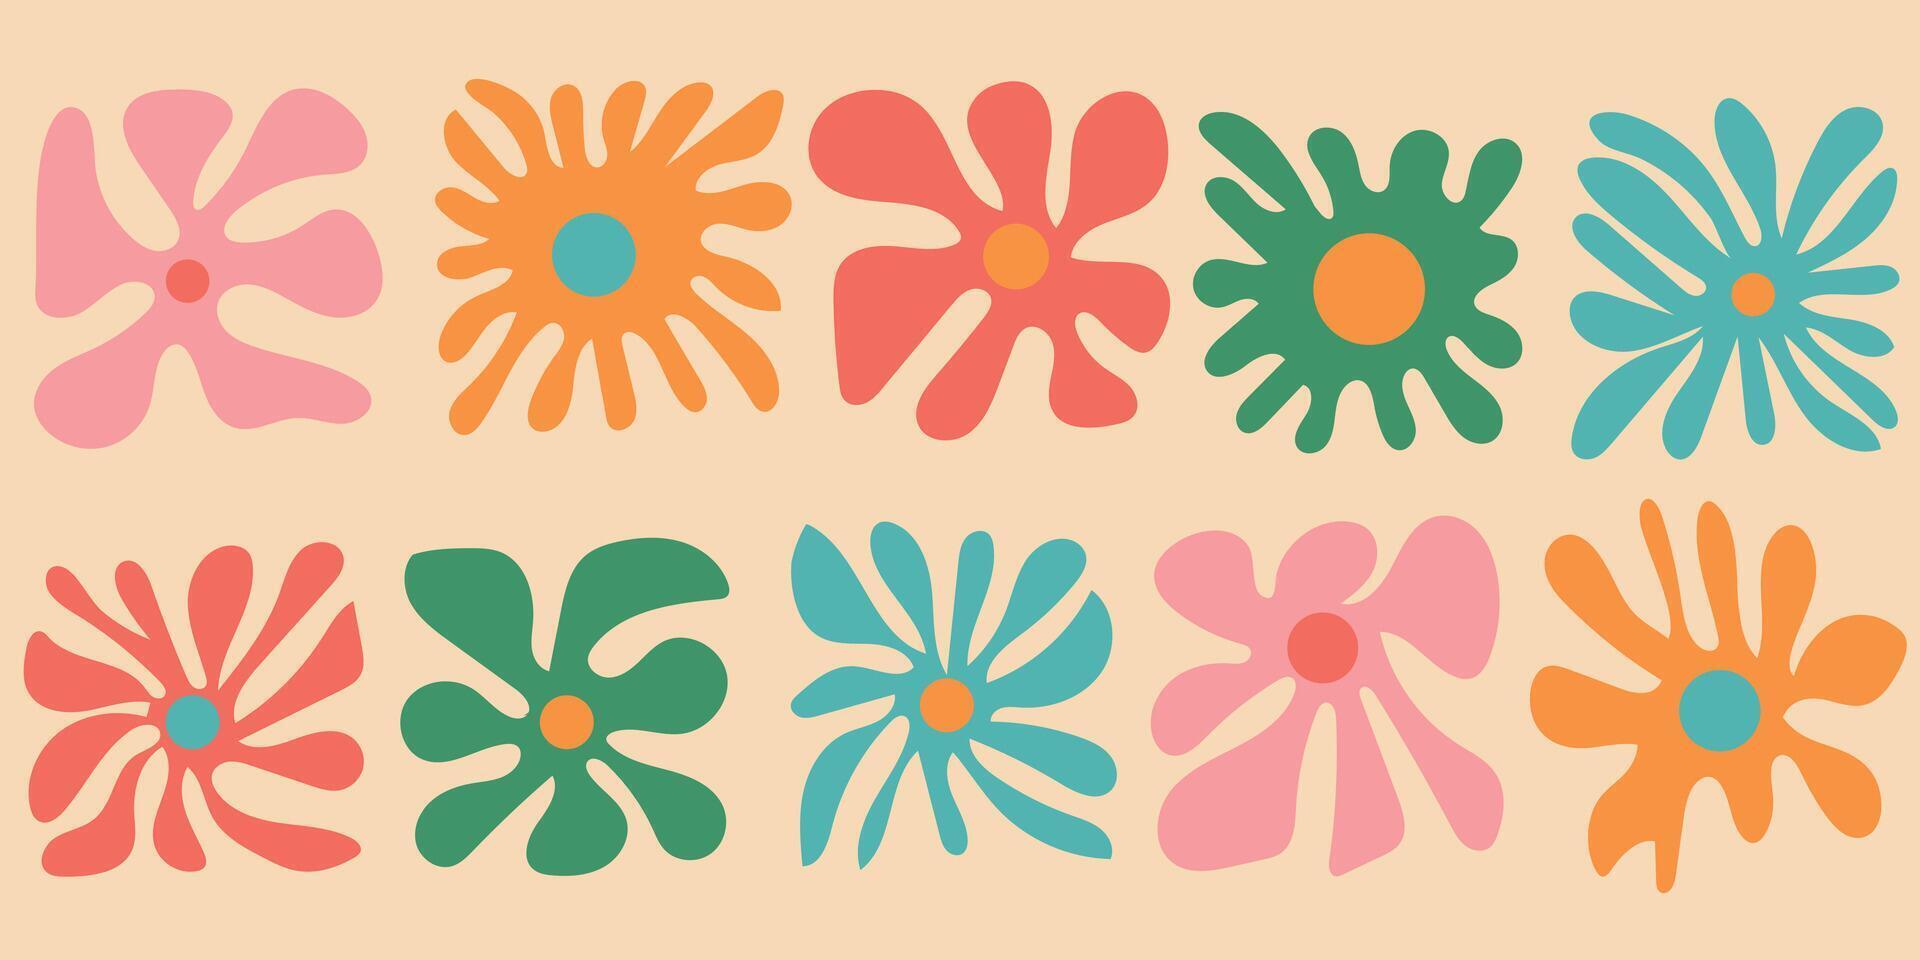 bunt retro Blumen Satz. Jahrgang Stil Hippie Blumen- Clip Art Element Design Sammlung. Hand gezeichnet Natur Collage, Frühling Jahreszeit Zeichnung bündeln mit Gänseblümchen Blumen. vektor